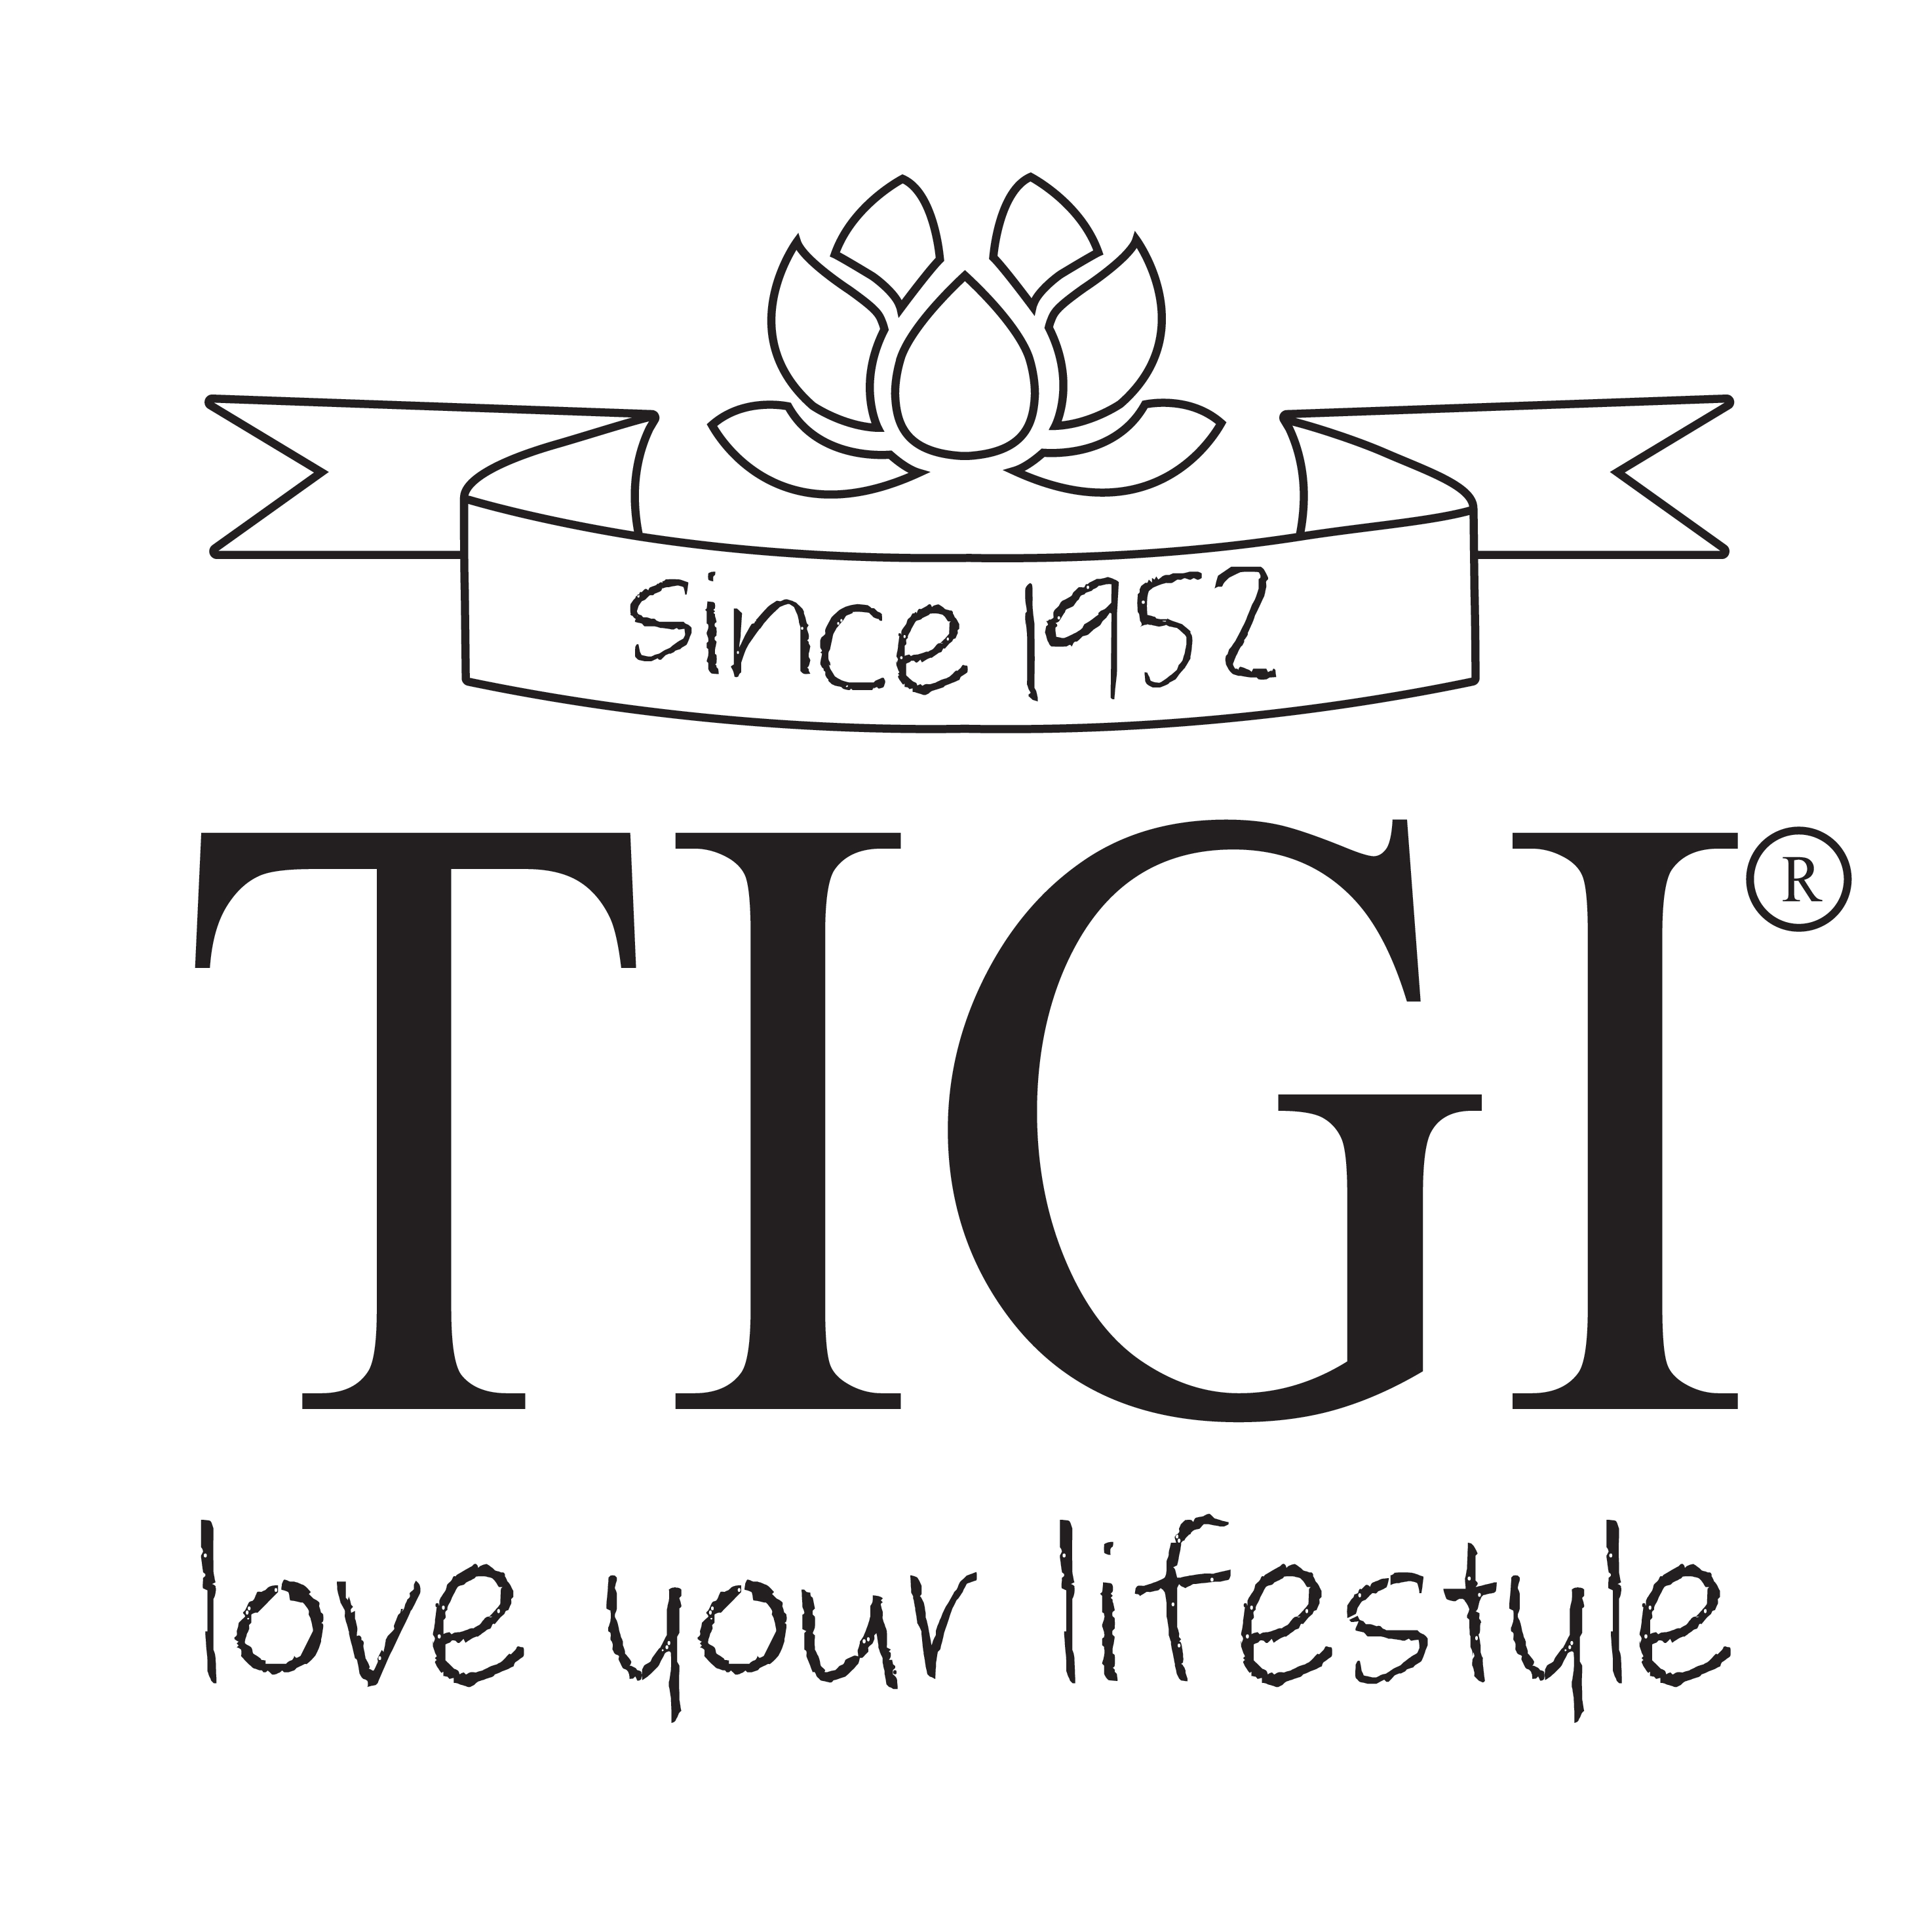 TIGI Logo